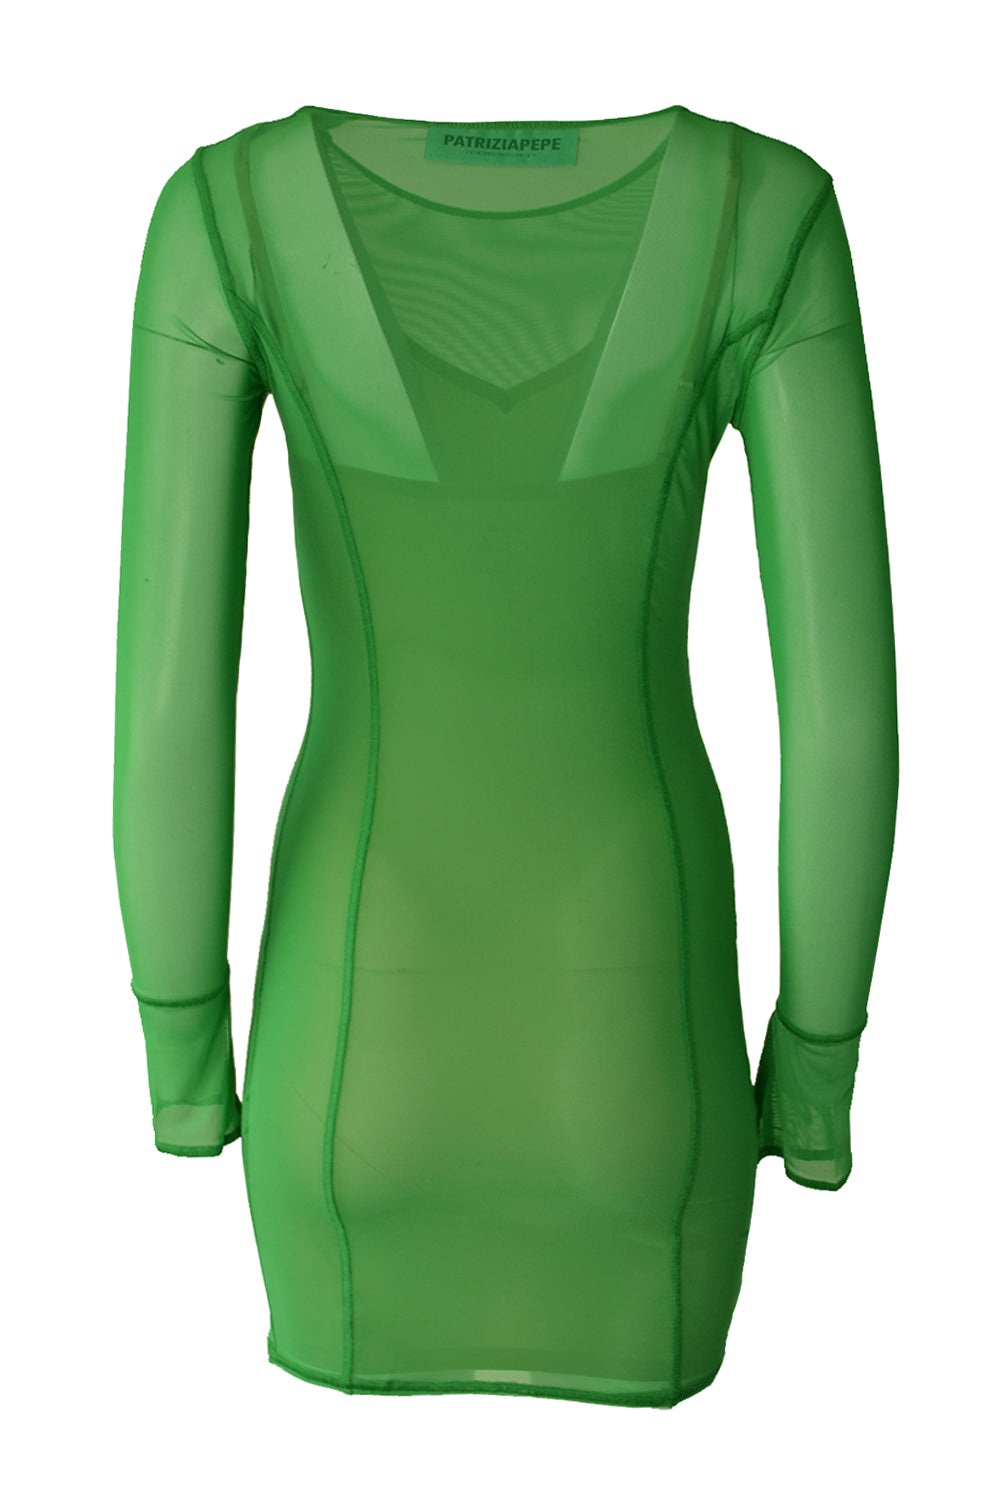 Patrizia Pepe 2A2662 Net Mini Dress Vibrant Green